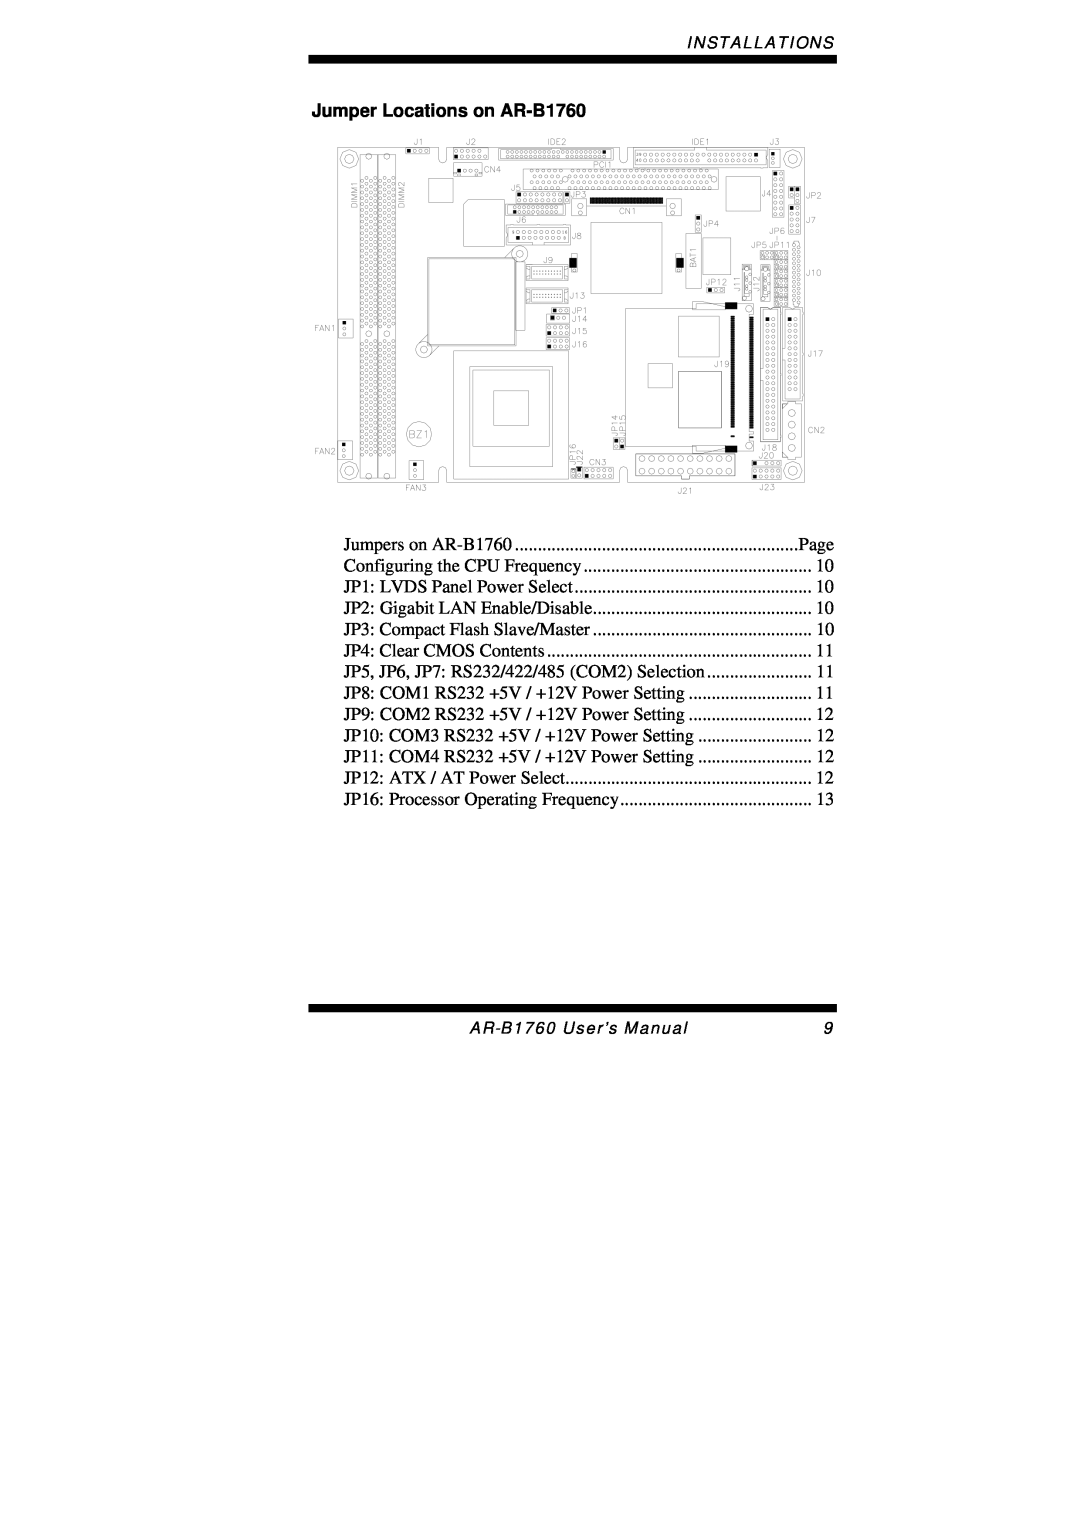 Intel user manual Jumper Locations on AR-B1760 